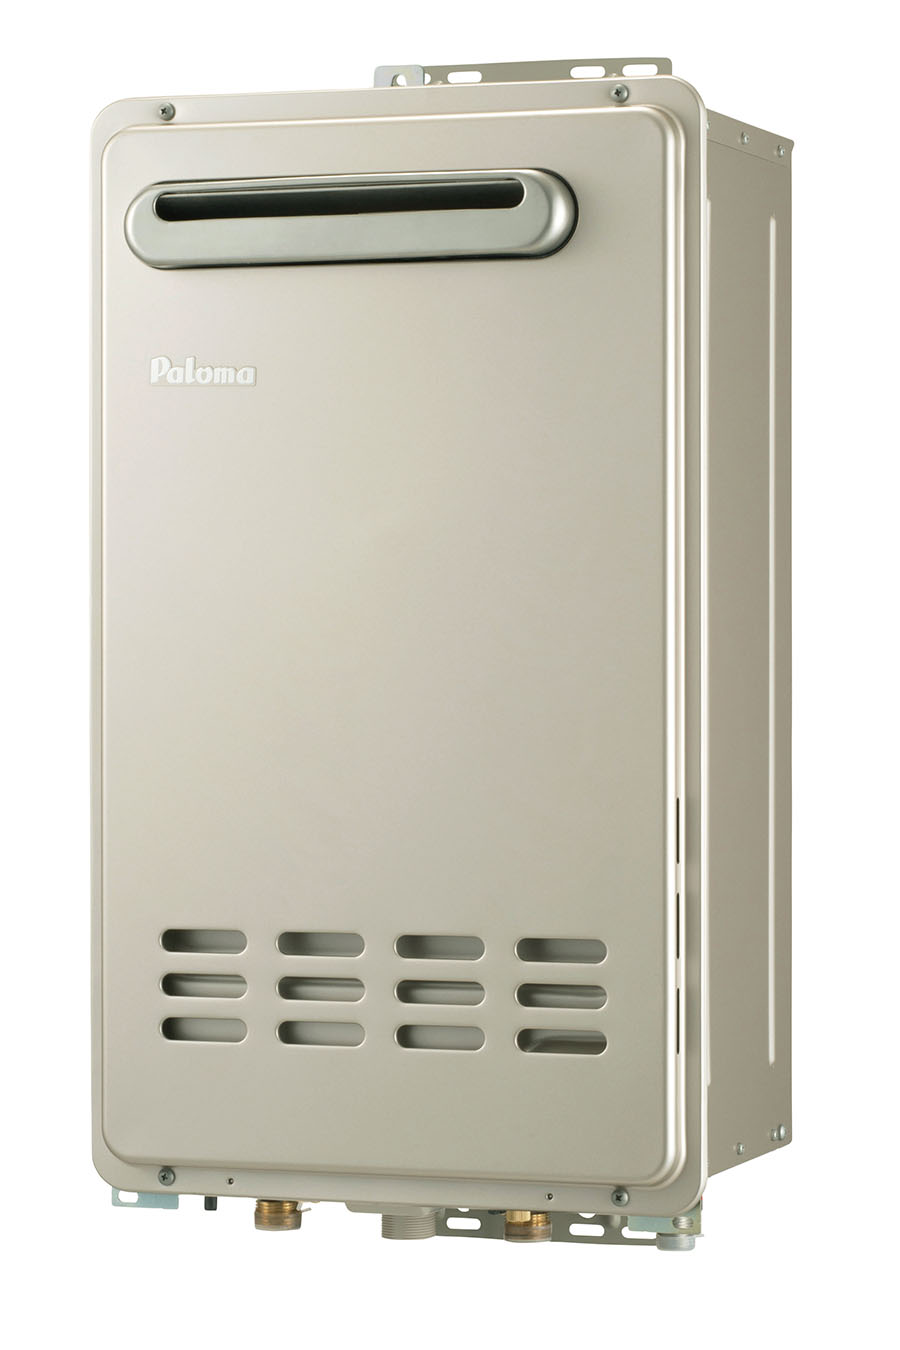 【パロマ】単機能給湯器 都市ガス用 エコジョーズ オートストップ24号 PH-E2425Aシリーズ